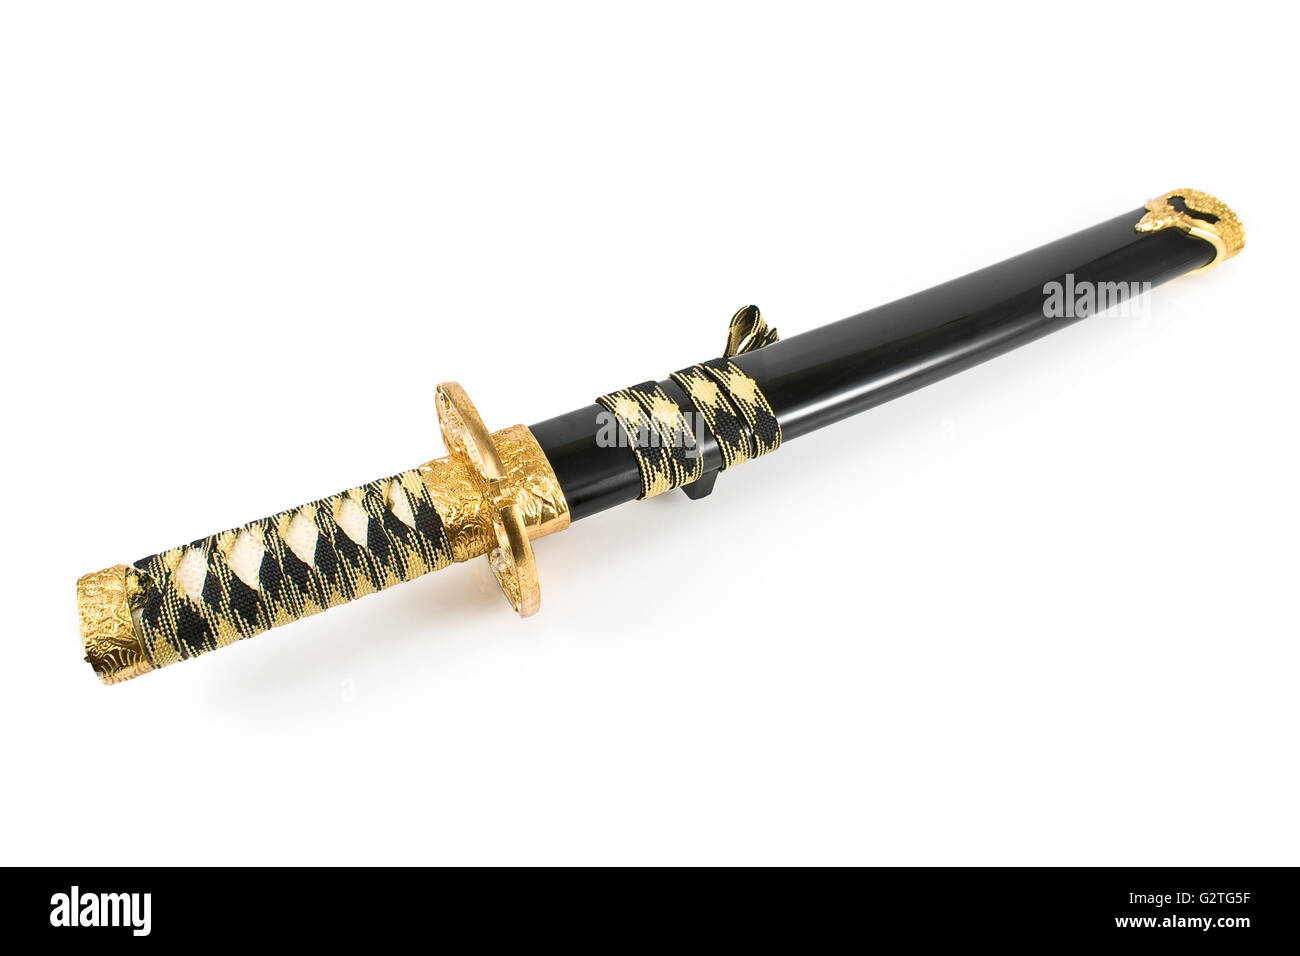 Katana sword hi-res stock photography and images - Alamy